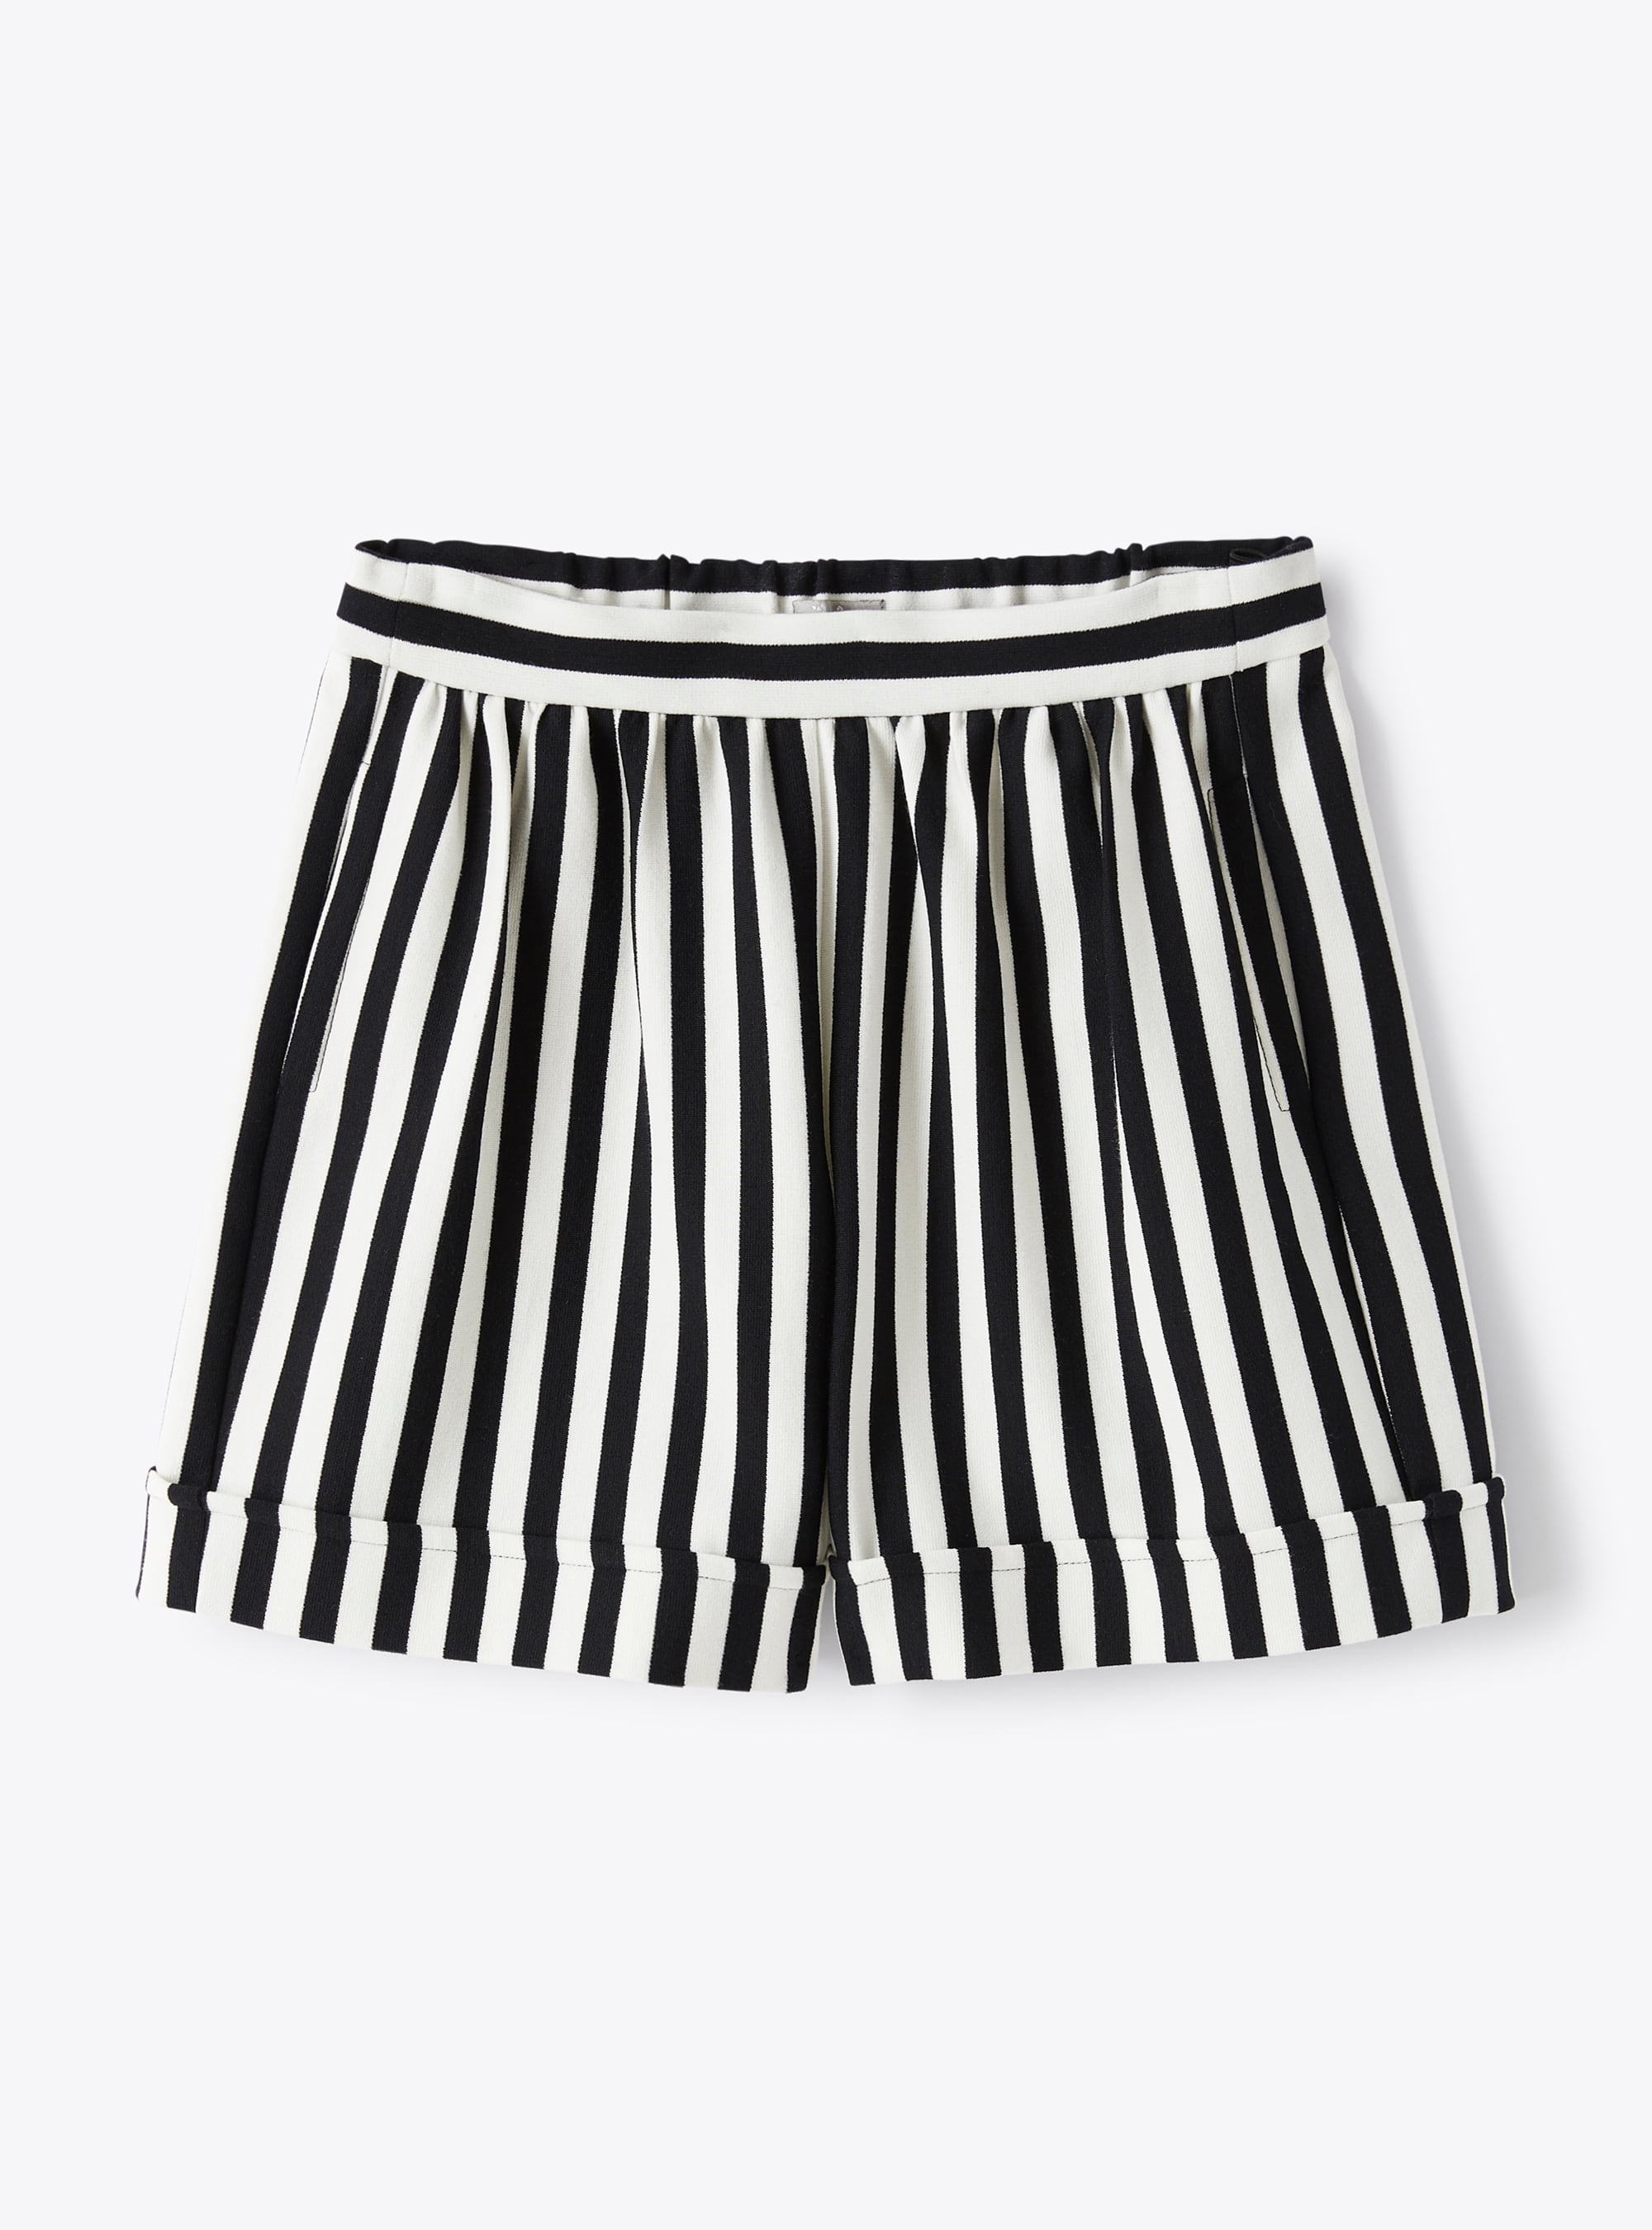 Bermuda shorts in striped romanite jersey - Trousers - Il Gufo